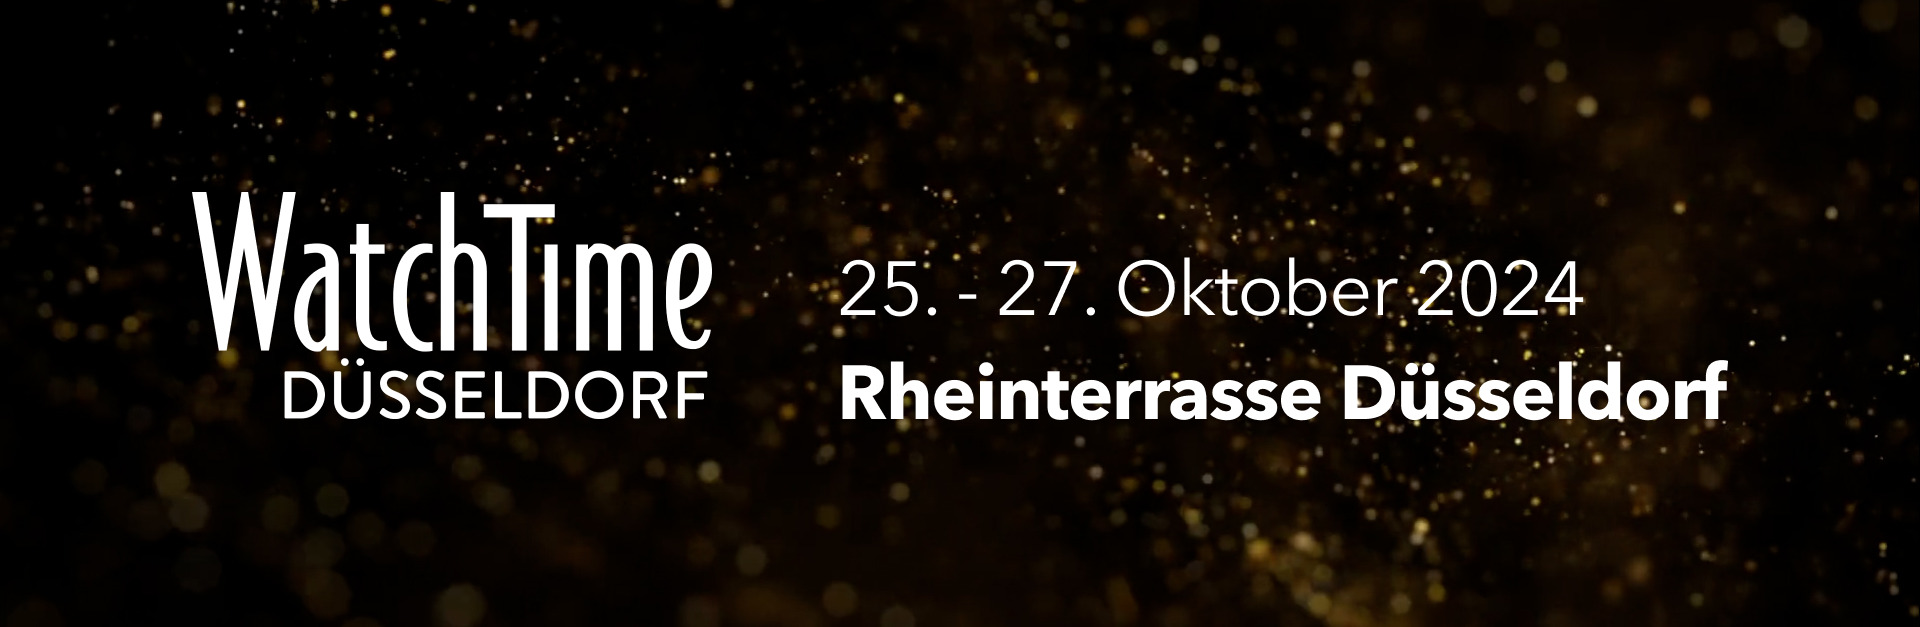 Header mit Informationen zum Event WatchTime Düsseldorf 25. -27. Oktober 2024 in der Rheinterrasse Düsseldorf.